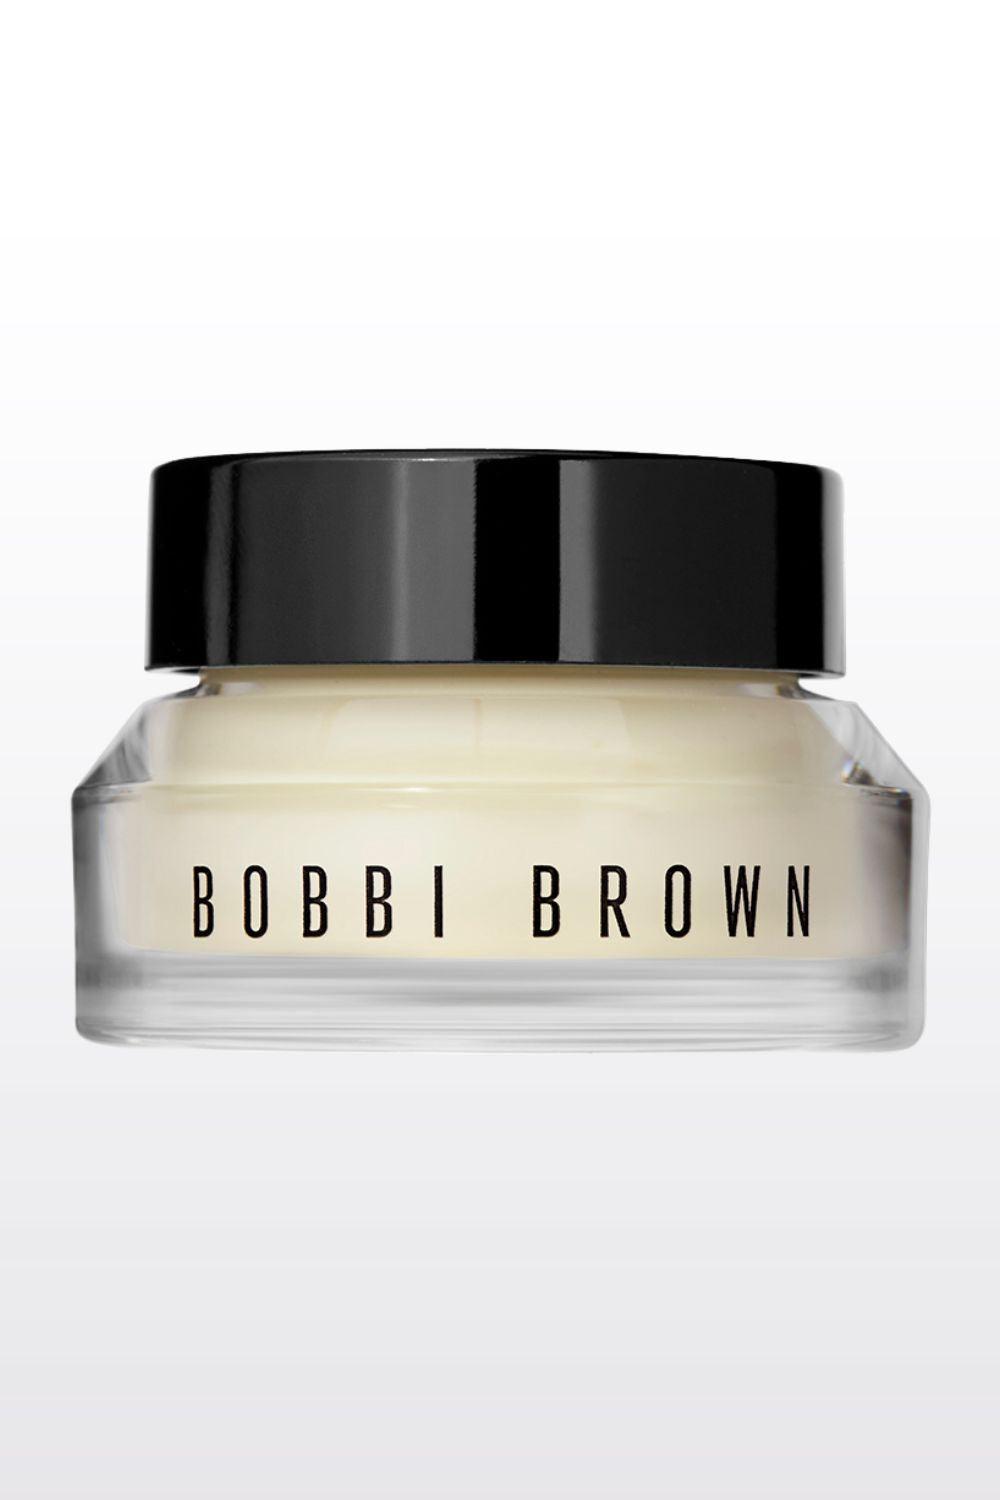 BOBBI BROWN - קרם לחות פריימר פנים מועשר בויטמין 50 מ"ל - MASHBIR//365